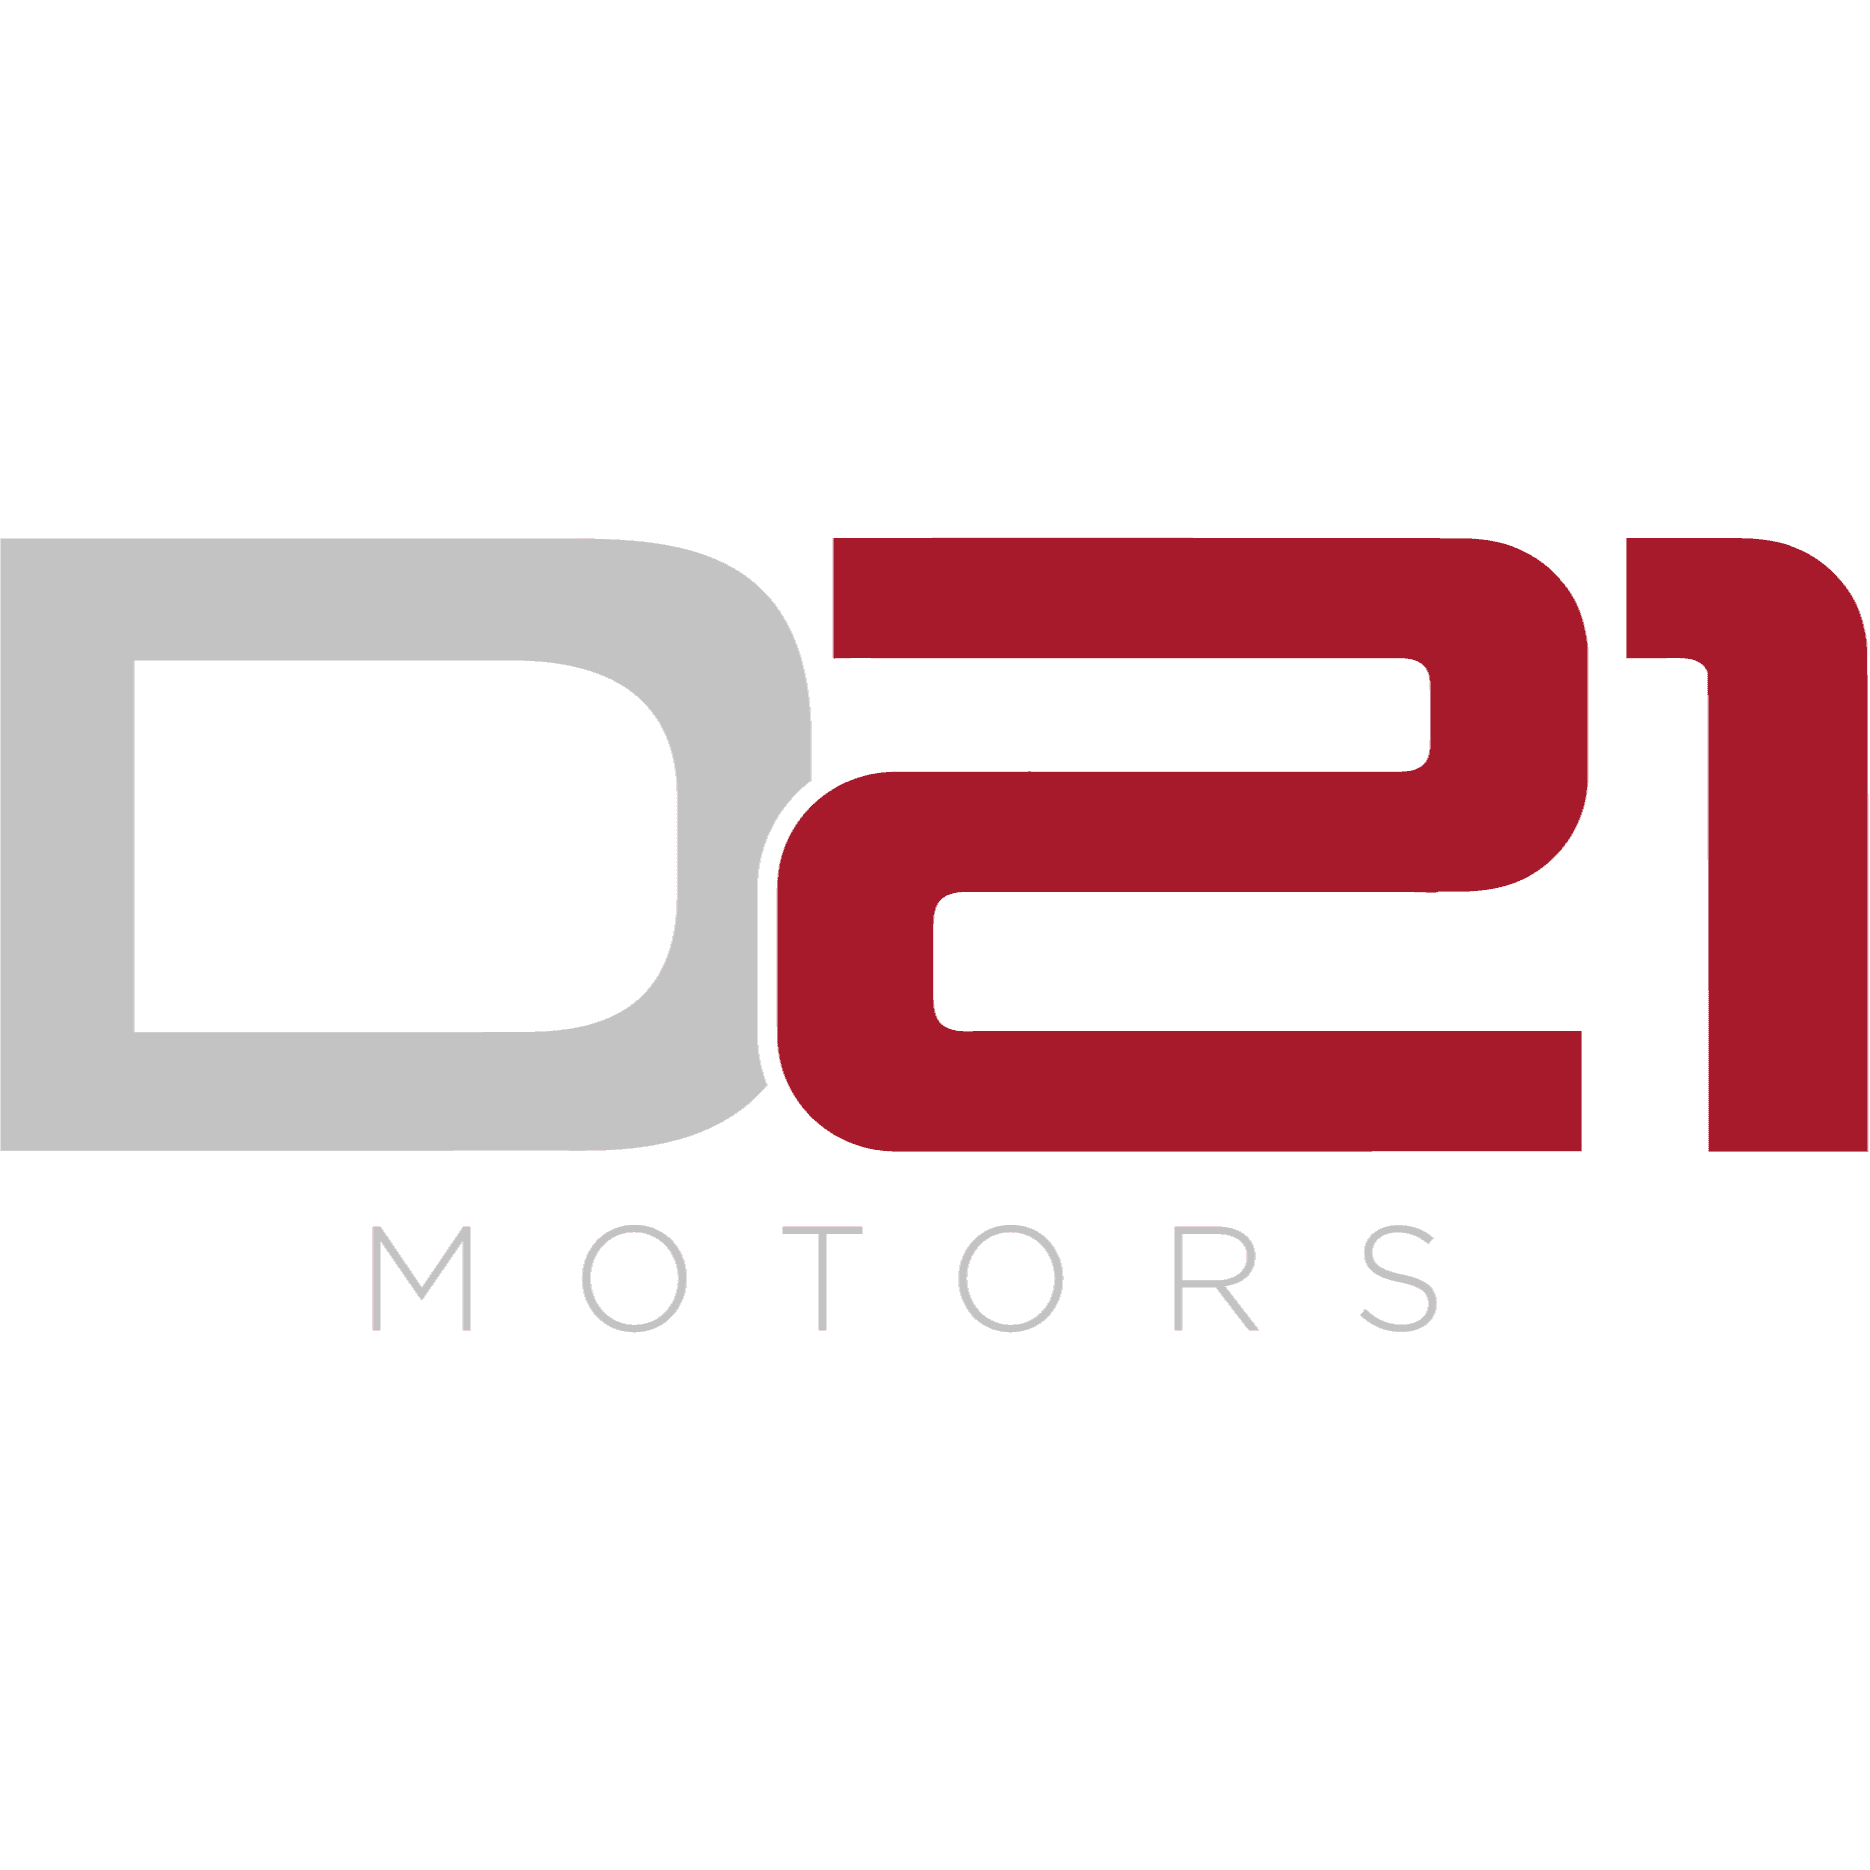 Company’s logo D21 MOTORS